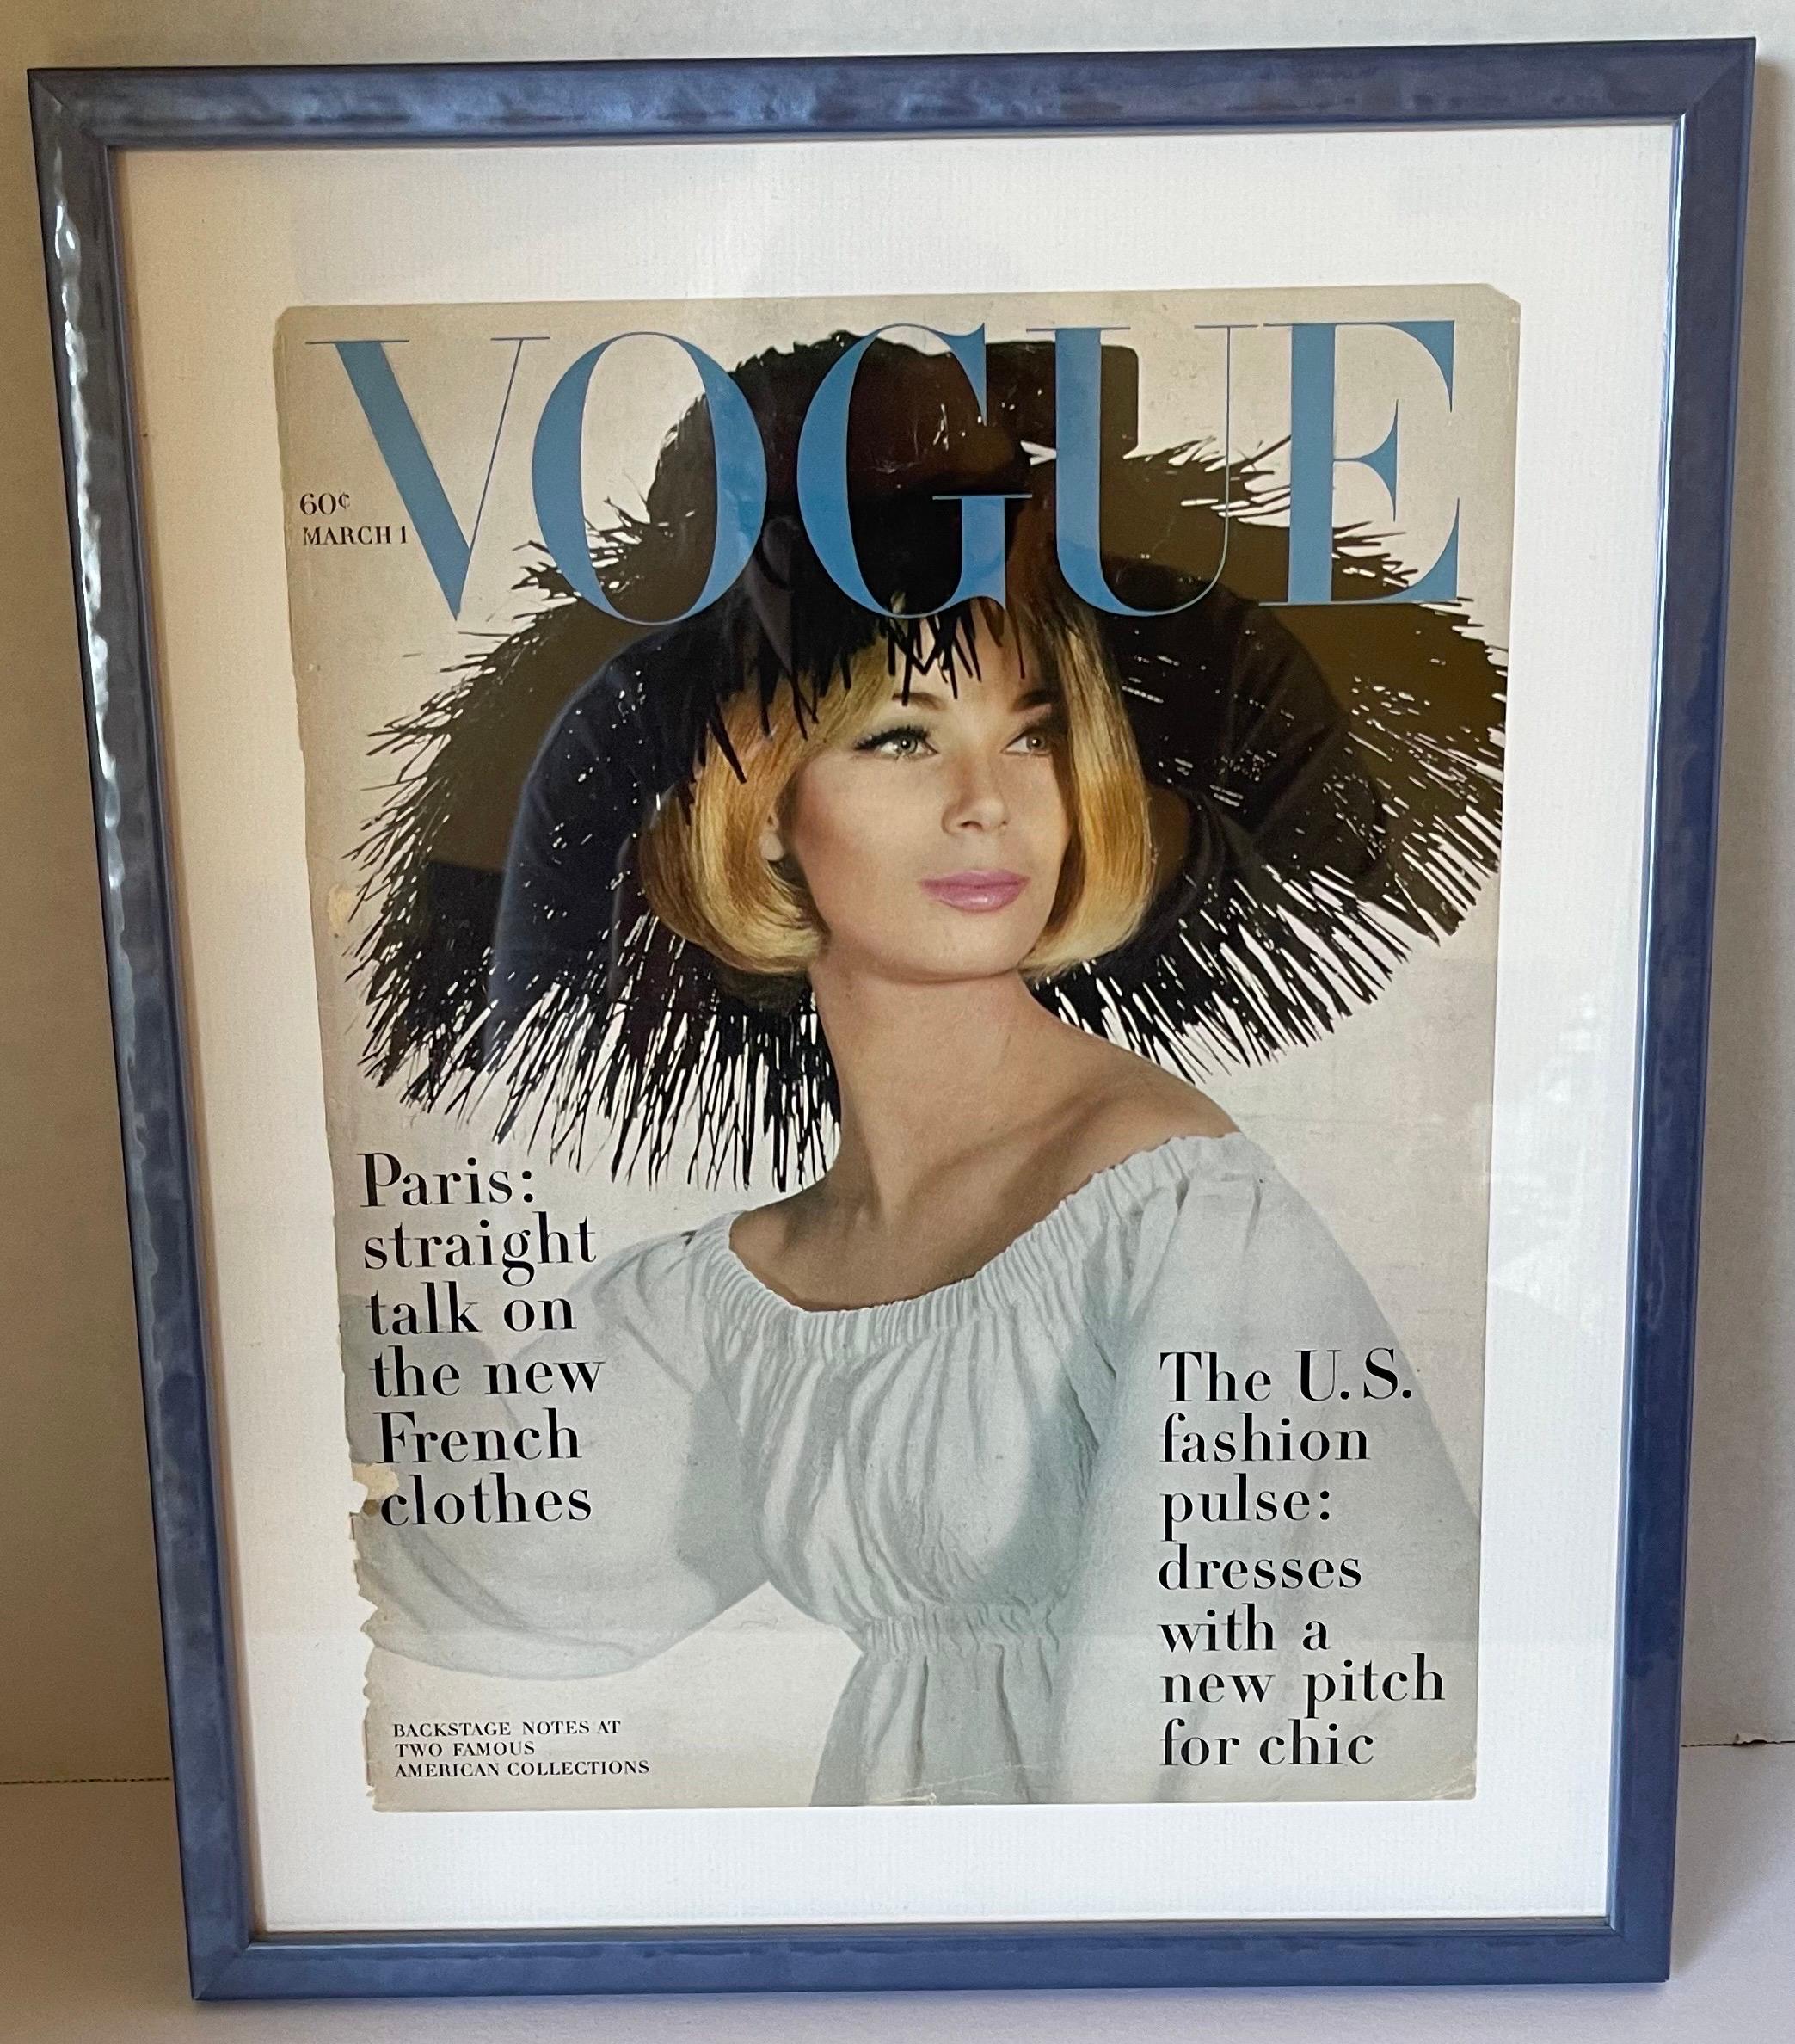 Vogue März 1963 gerahmtes Original-Cover. Mit dem Covermodel Burke-Amey und einem Cartwheel-Hut von Halston von Irving Penn. Neu gerahmt in blauem Hochglanzholzrahmen. 